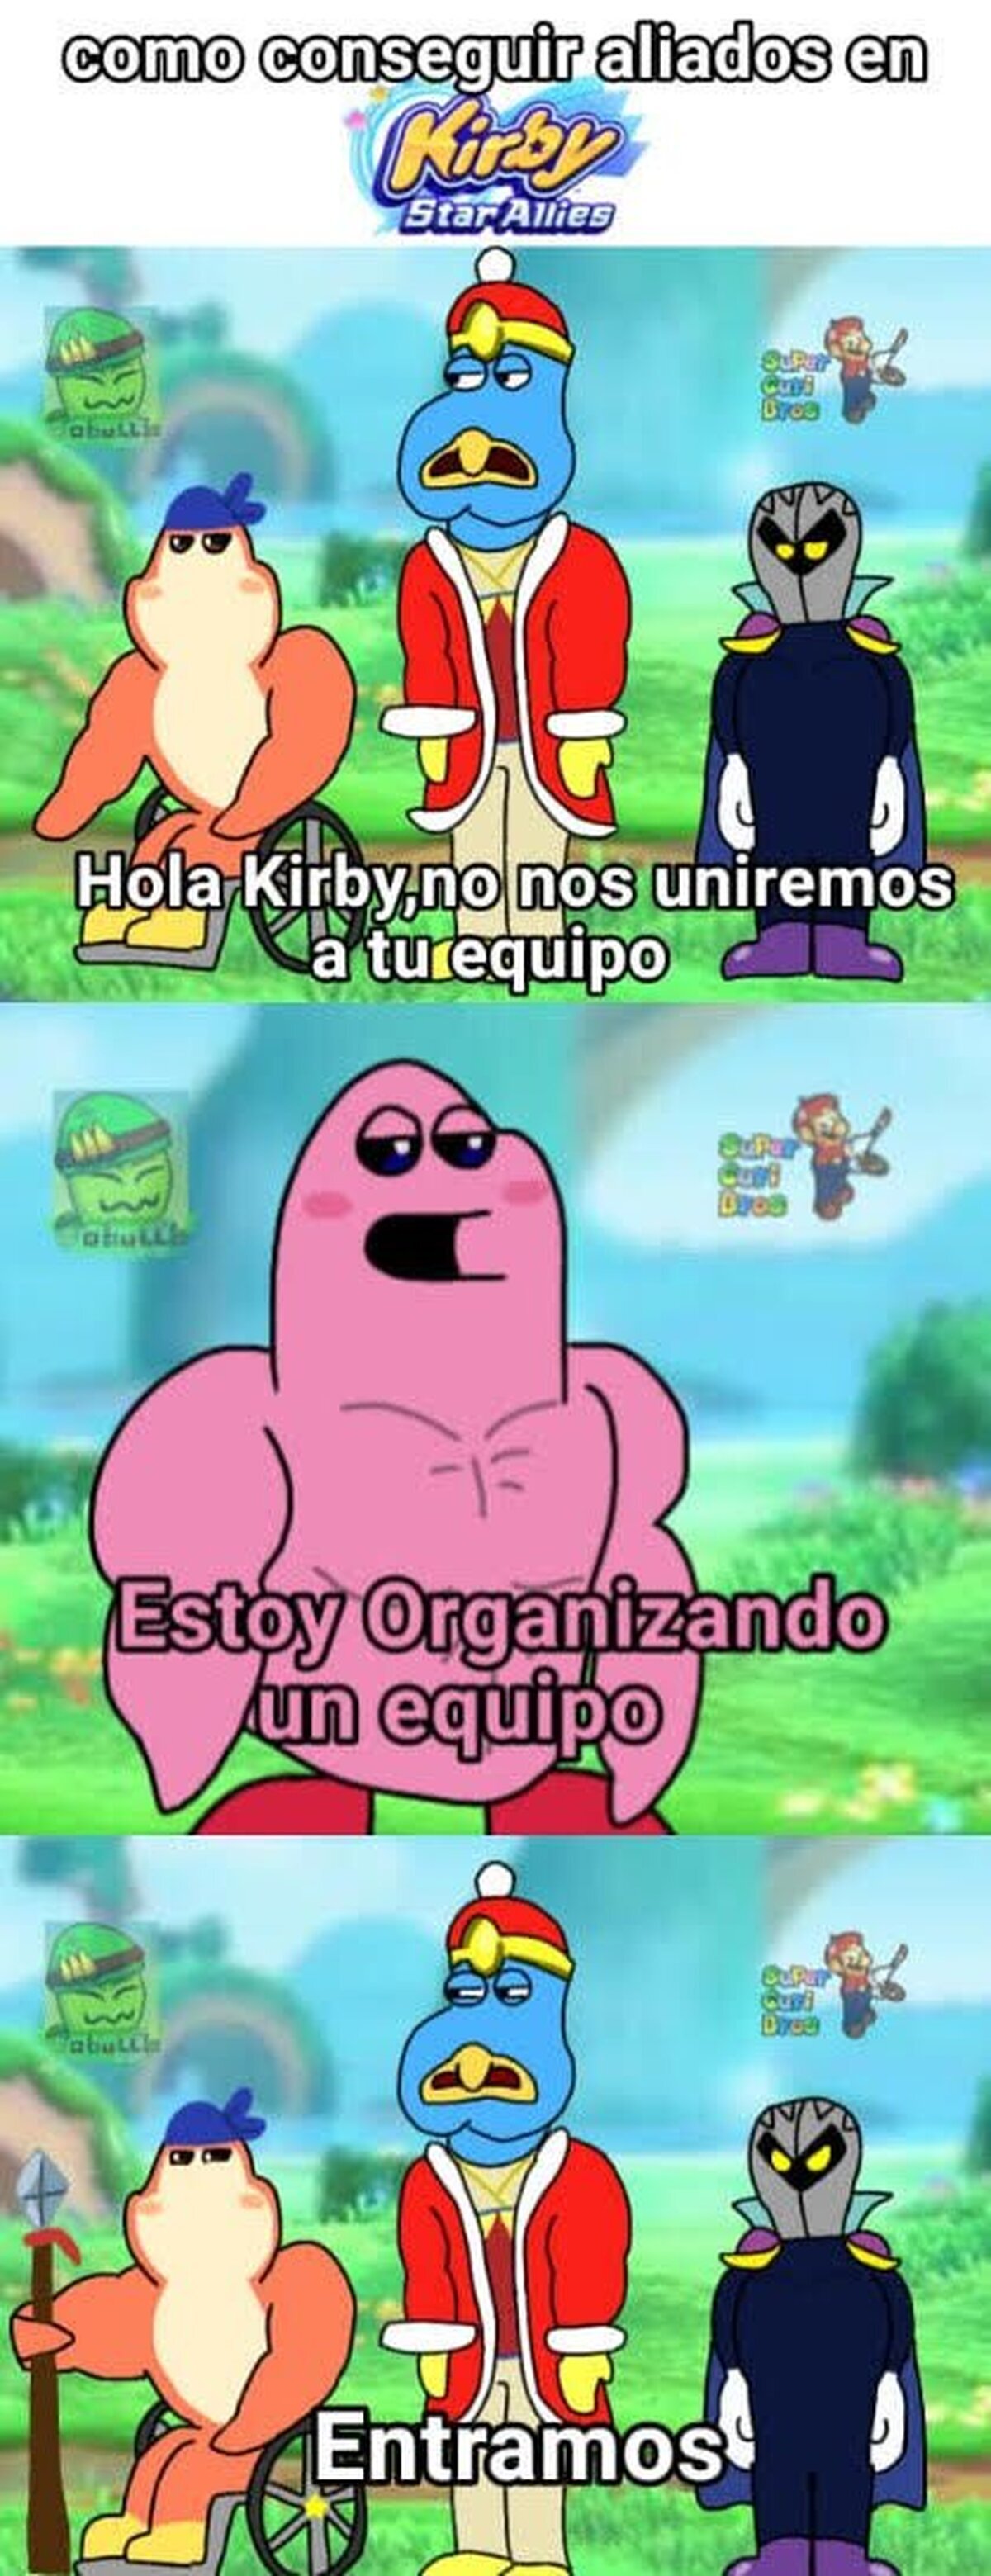 Kirby y su poder de convencer